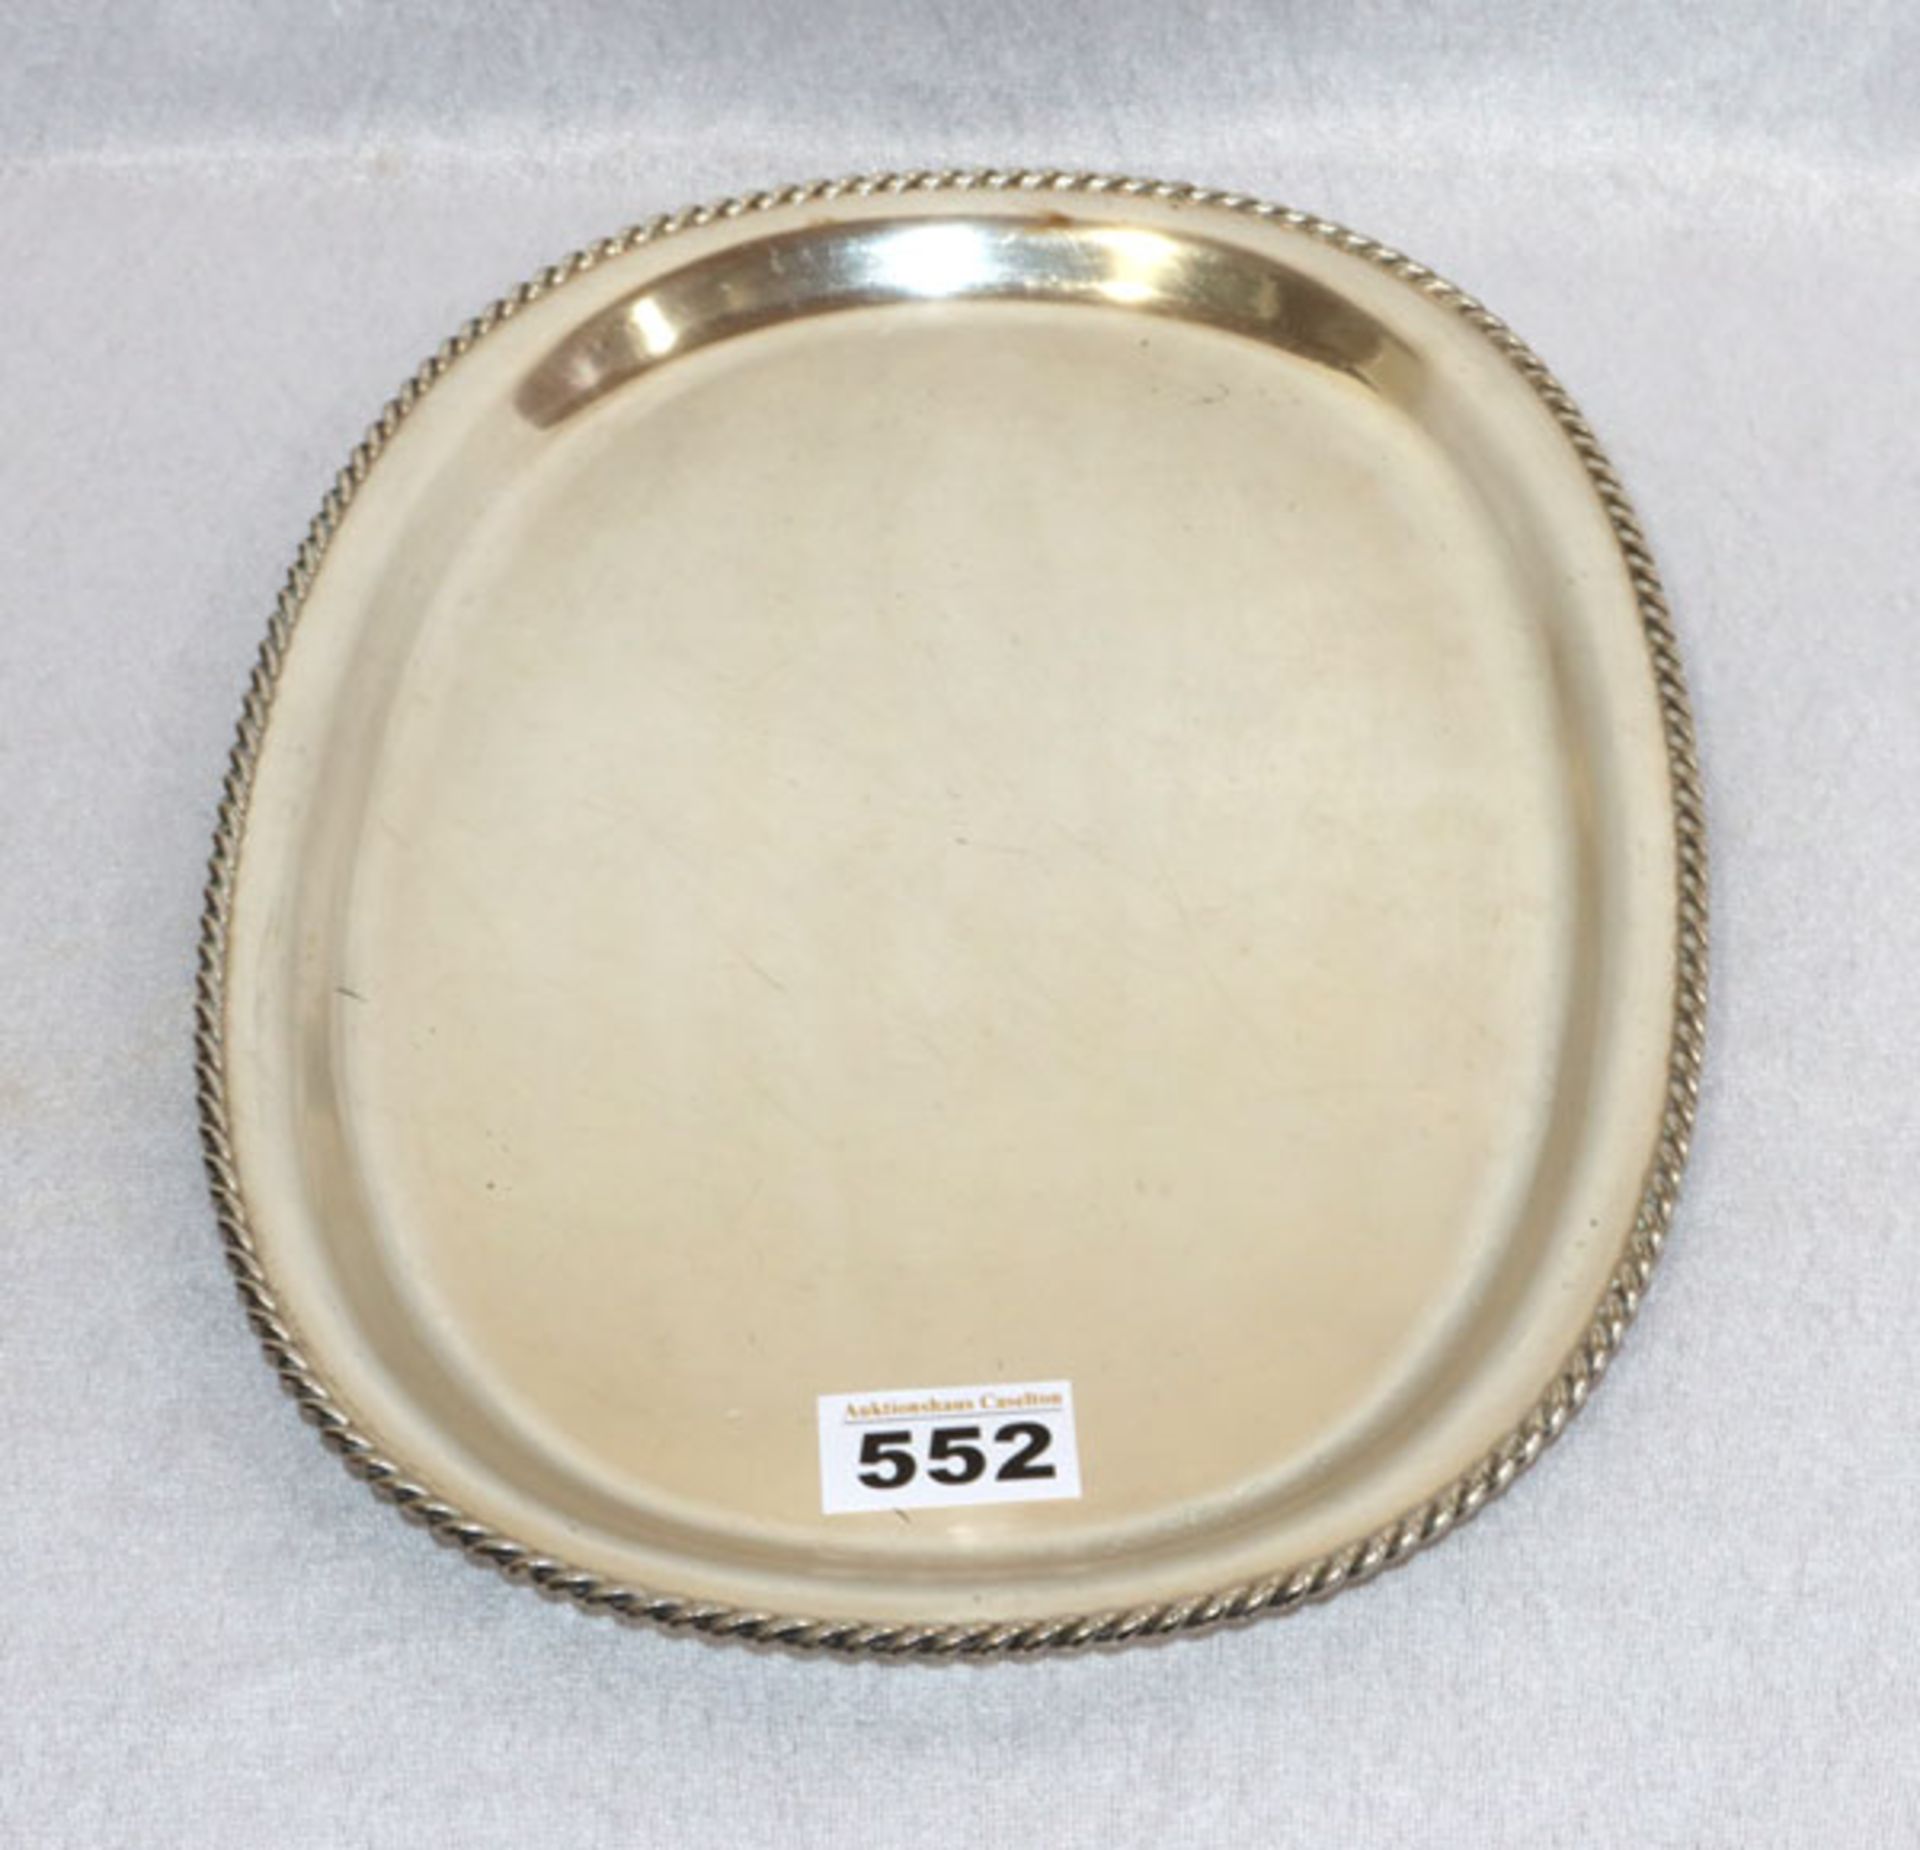 Silber Tablett, oval mit Reliefrand, 800 Silber, 481 gr., 33 cm x 24 cm, Gebrauchsspuren